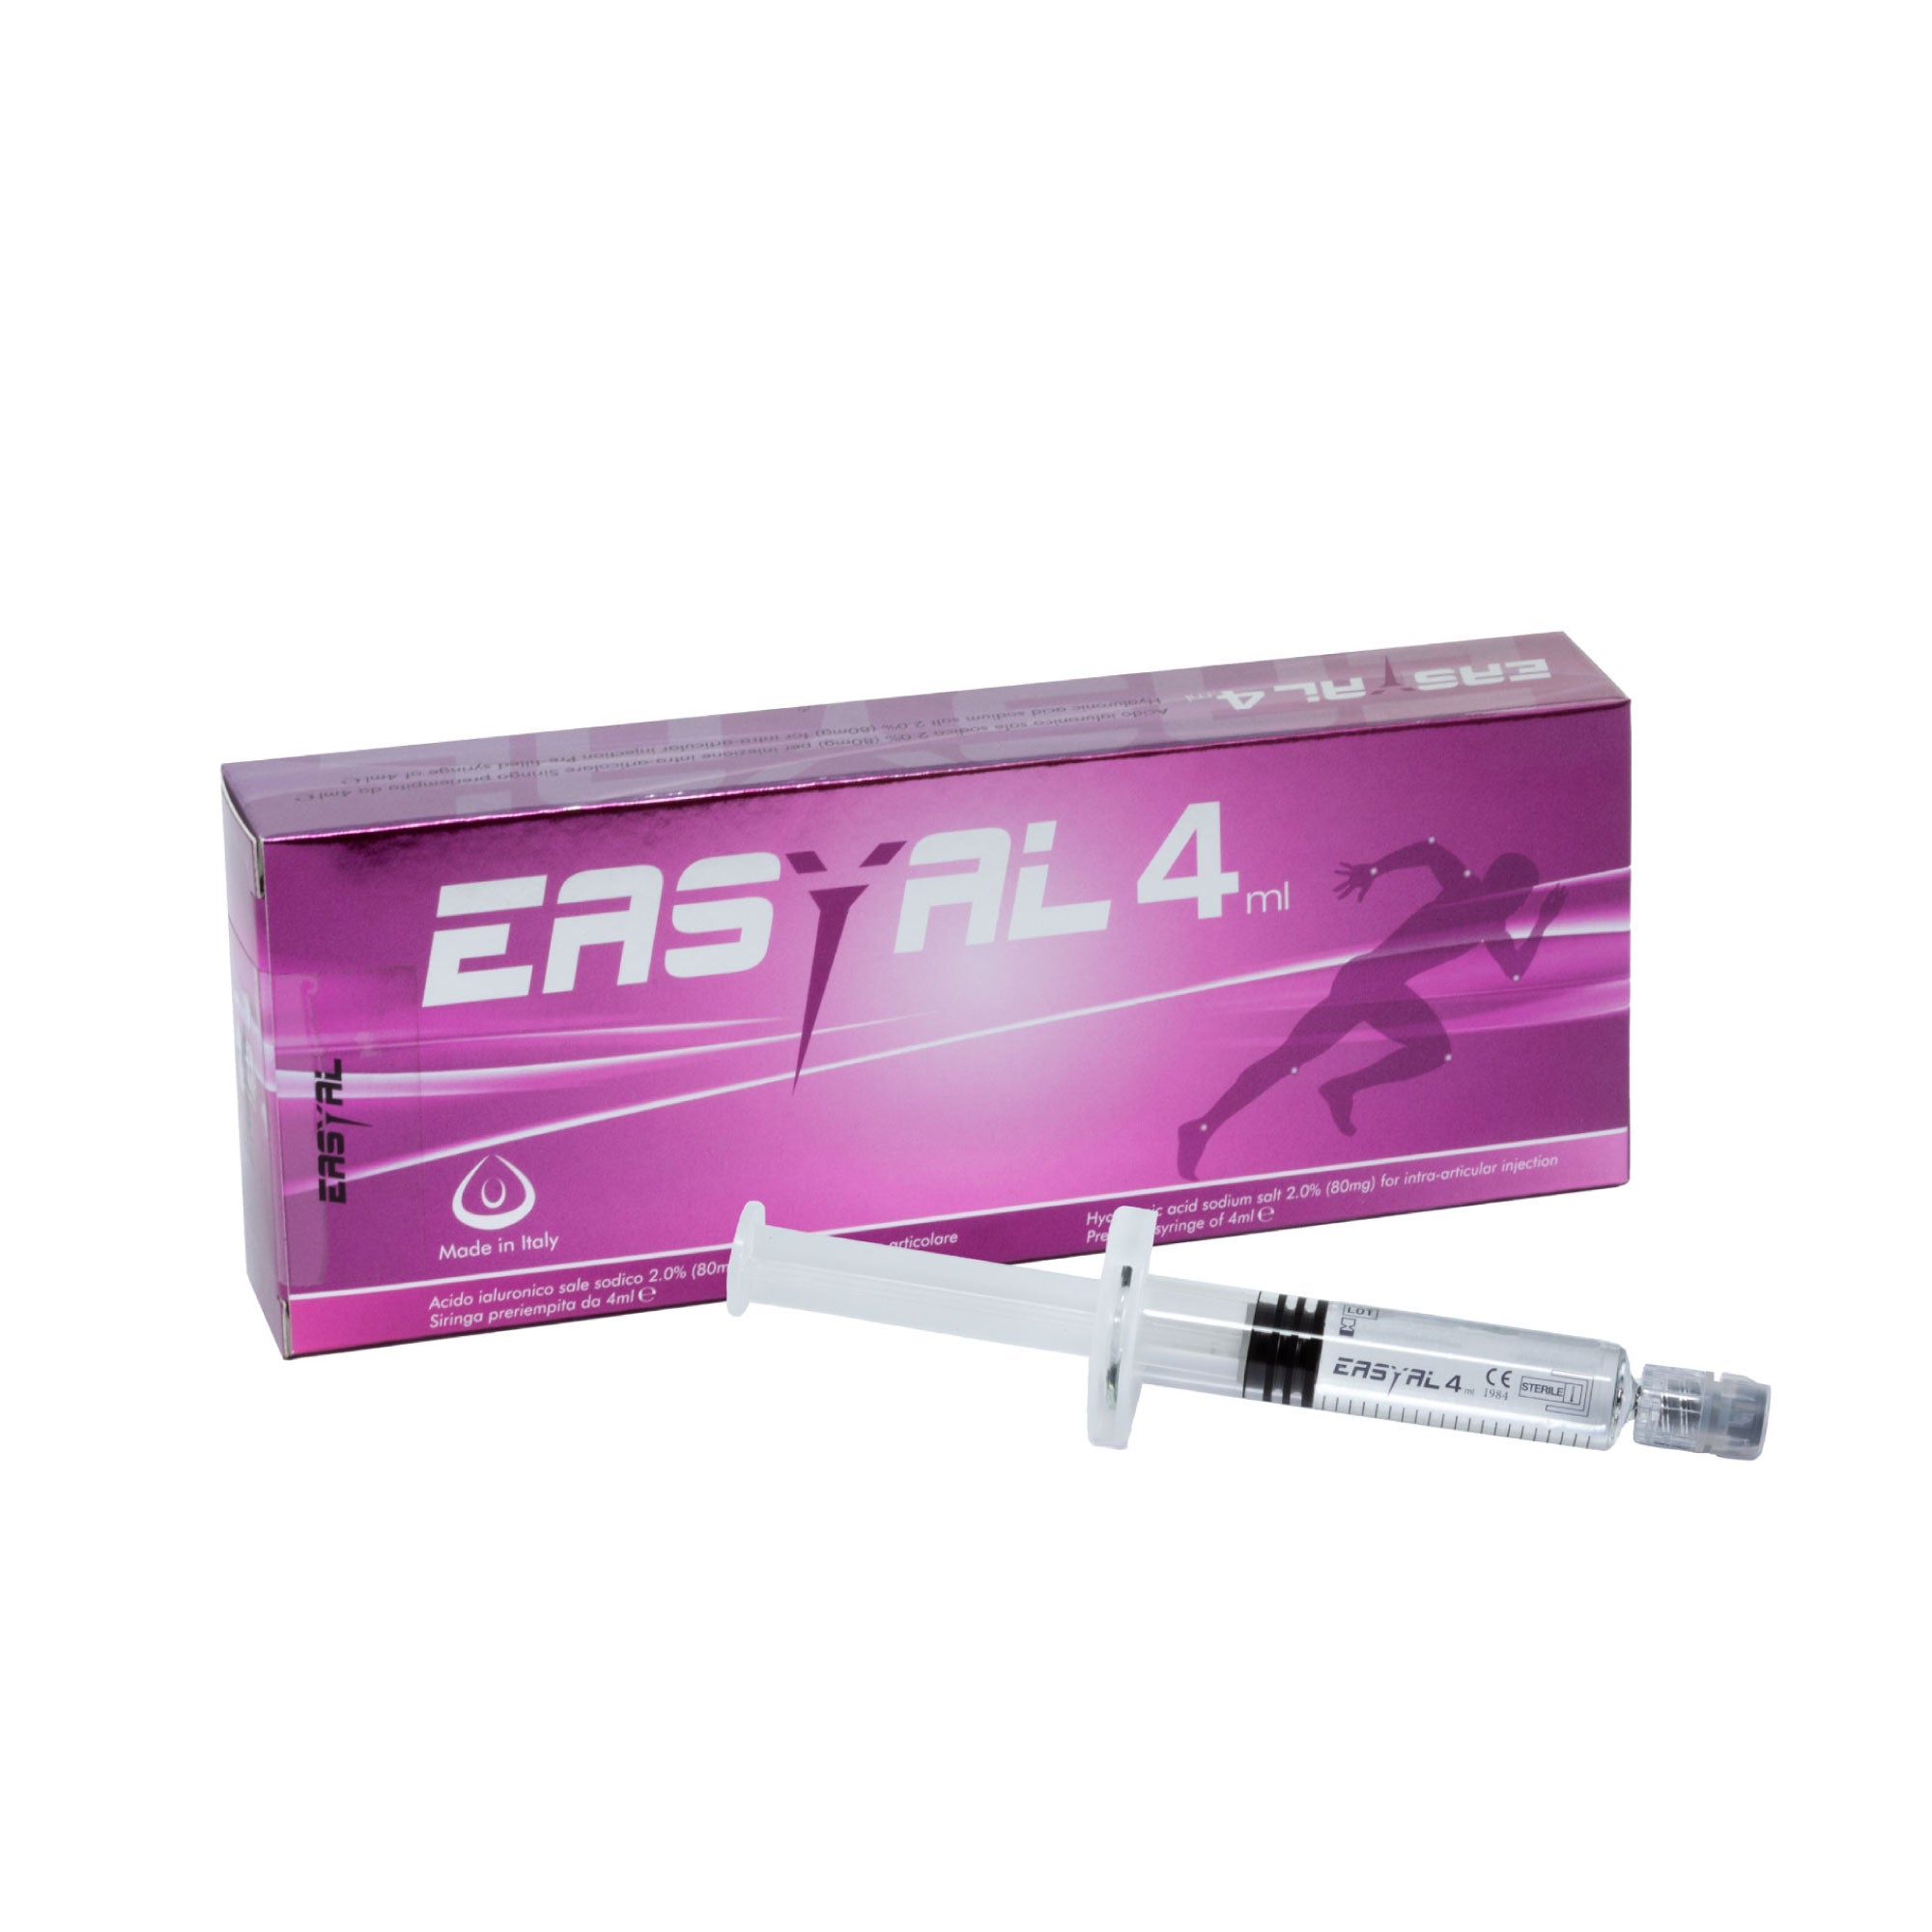 EASYAL 4ml - Sale di Acido Ialuronico - Trattamento per Malattie Degenerative / Infiammatorie delle Articolazioni